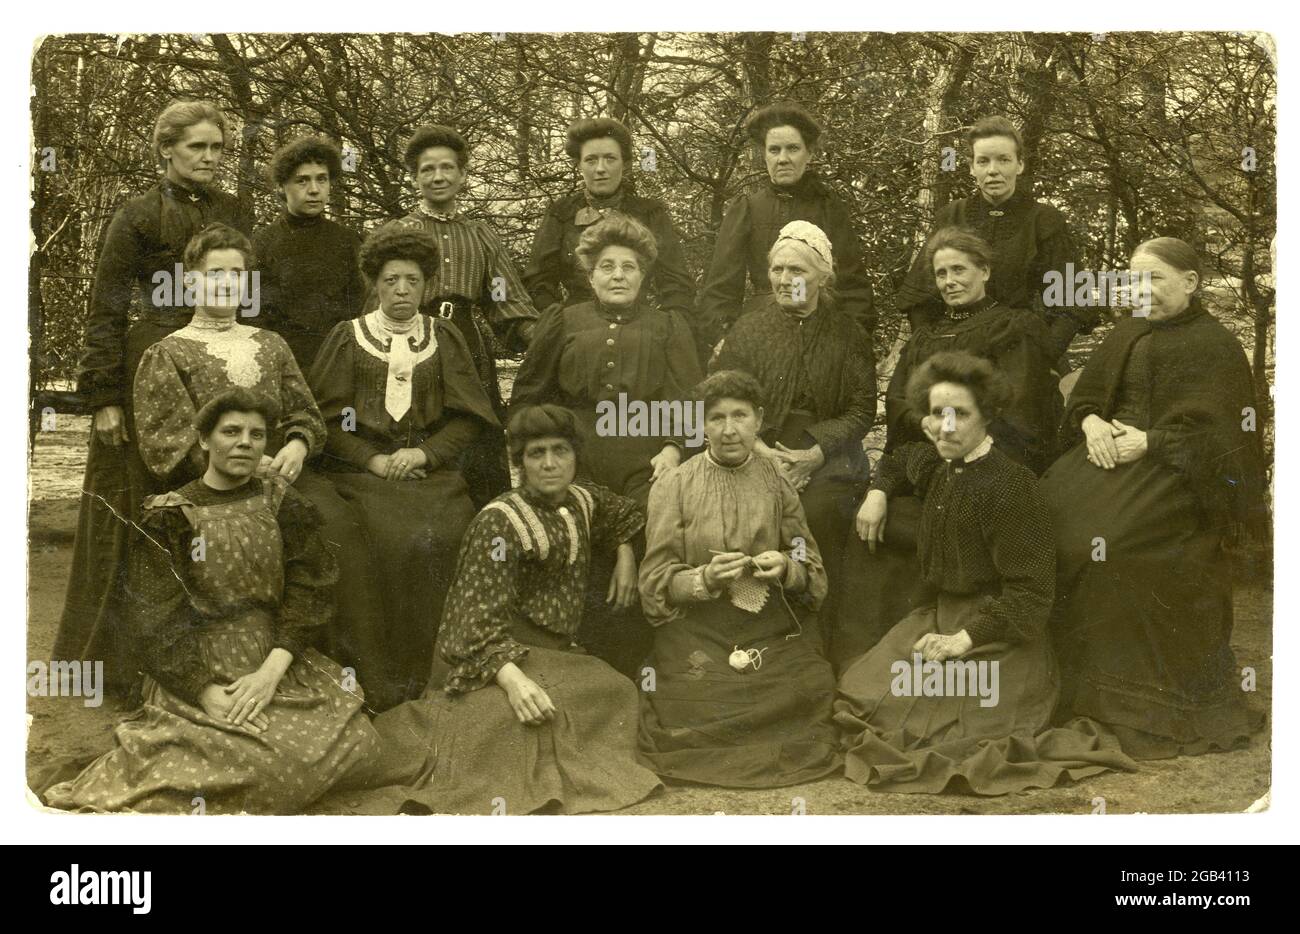 RPPPC Edwardien original (carte postale photographique réelle) d'un groupe de femmes à l'extérieur, de tous âges, y compris les femmes âgées et les femmes noires d'origine, les patients en convalescence dans un hôpital, possiblement la maison de convalescence de Cookridge, affiché le 1908 avril Horsforth, Leeds, Royaume-Uni Banque D'Images